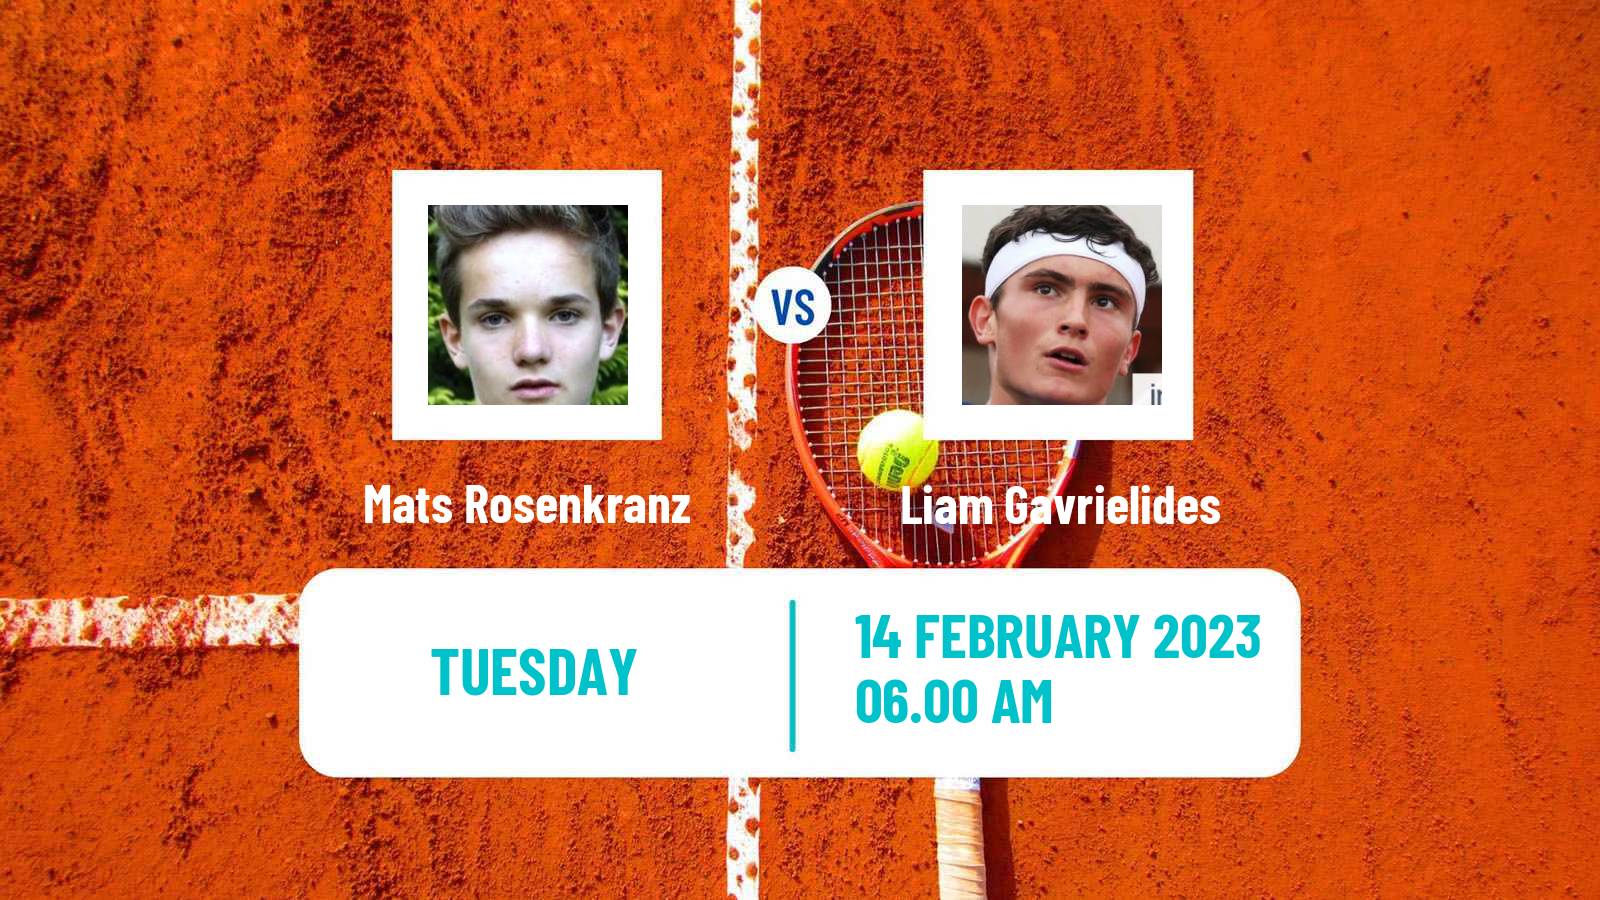 Tennis ITF Tournaments Mats Rosenkranz - Liam Gavrielides